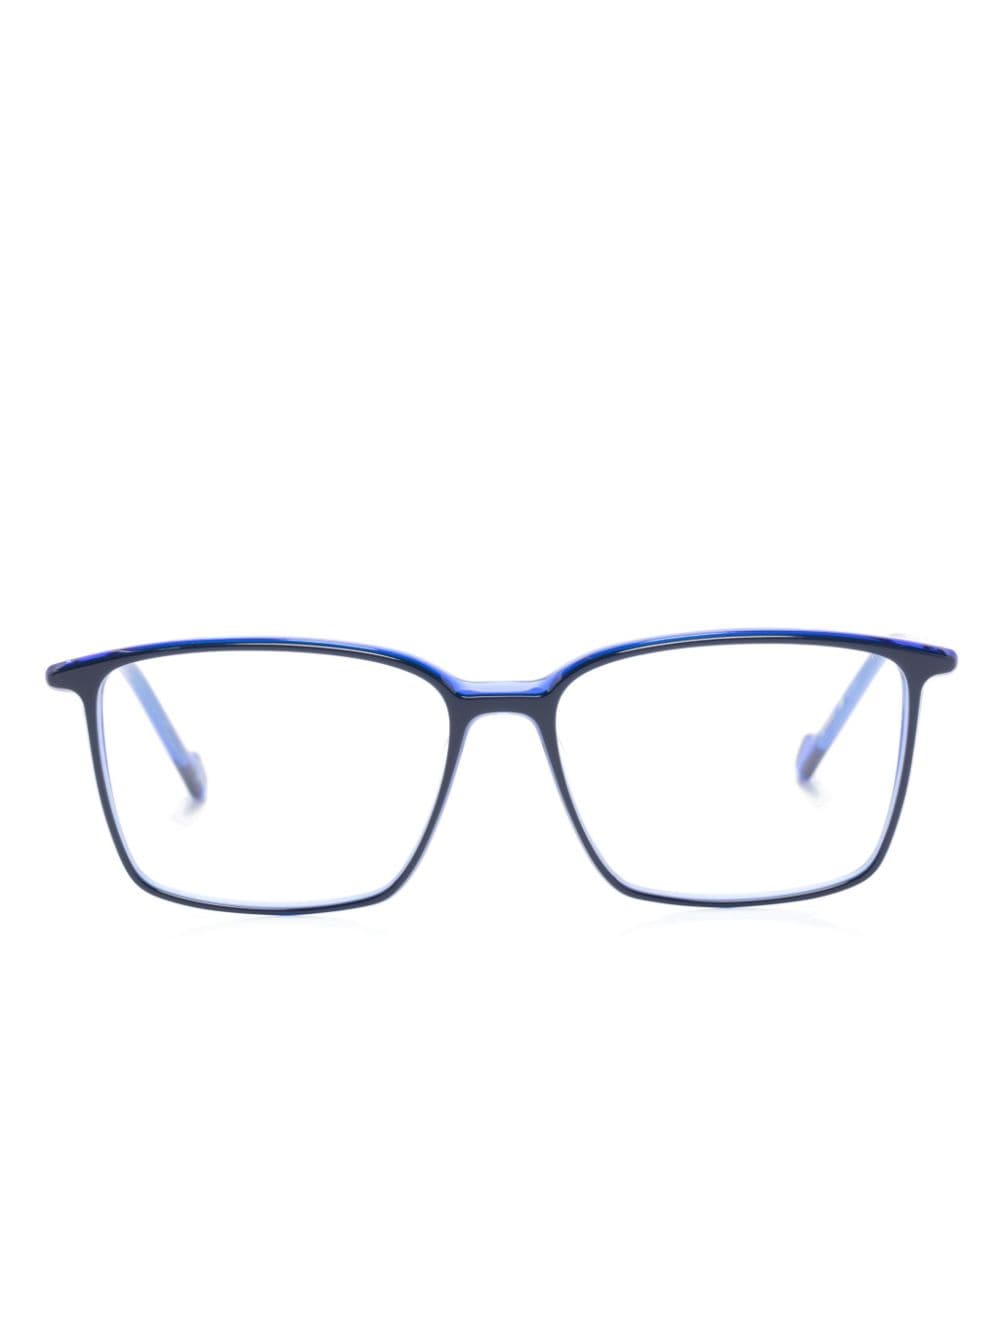 Ultralight rectangle-frame glasses